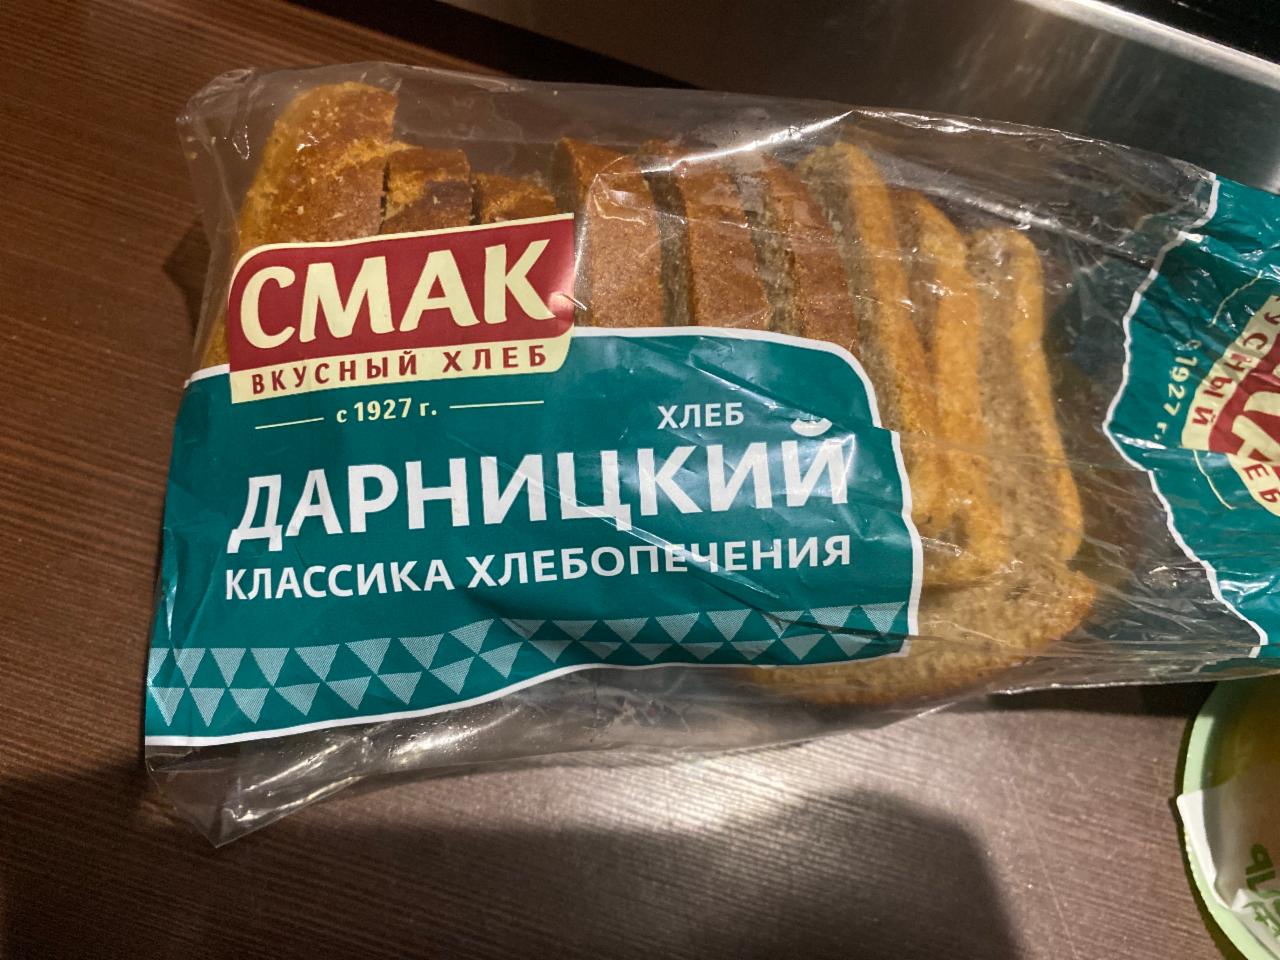 Фото - хлеб Дарницкий формовой, нарезаенный в упаковке СМАК